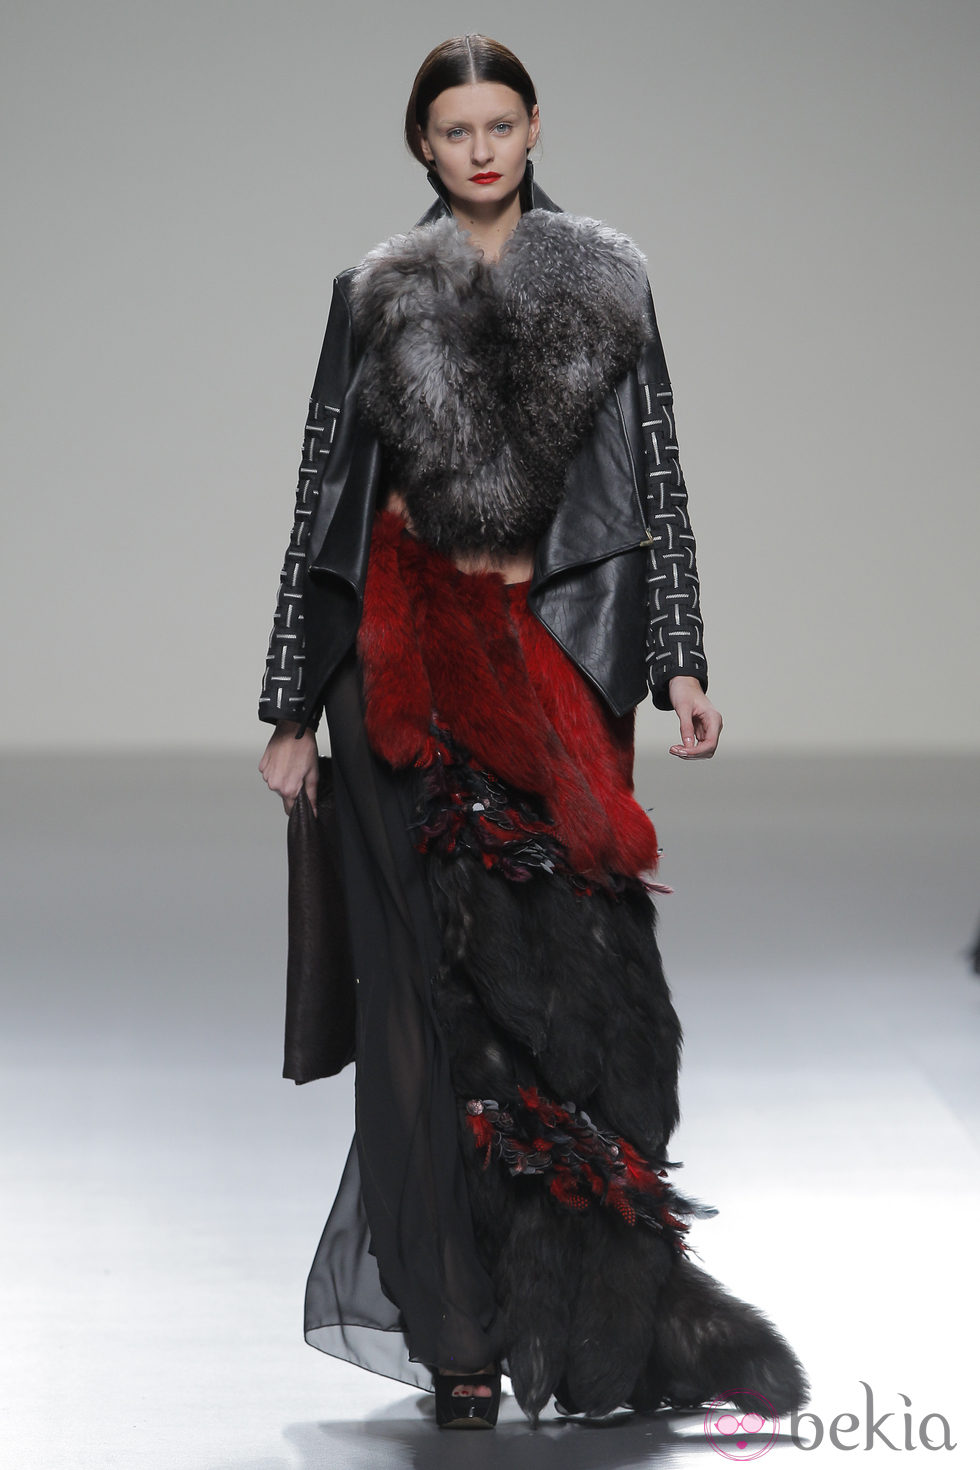 Vestido de pieles de la colección otoño/invierno 2013/2014 de Pablo Erroz en El Ego de Madrid Fashion Week